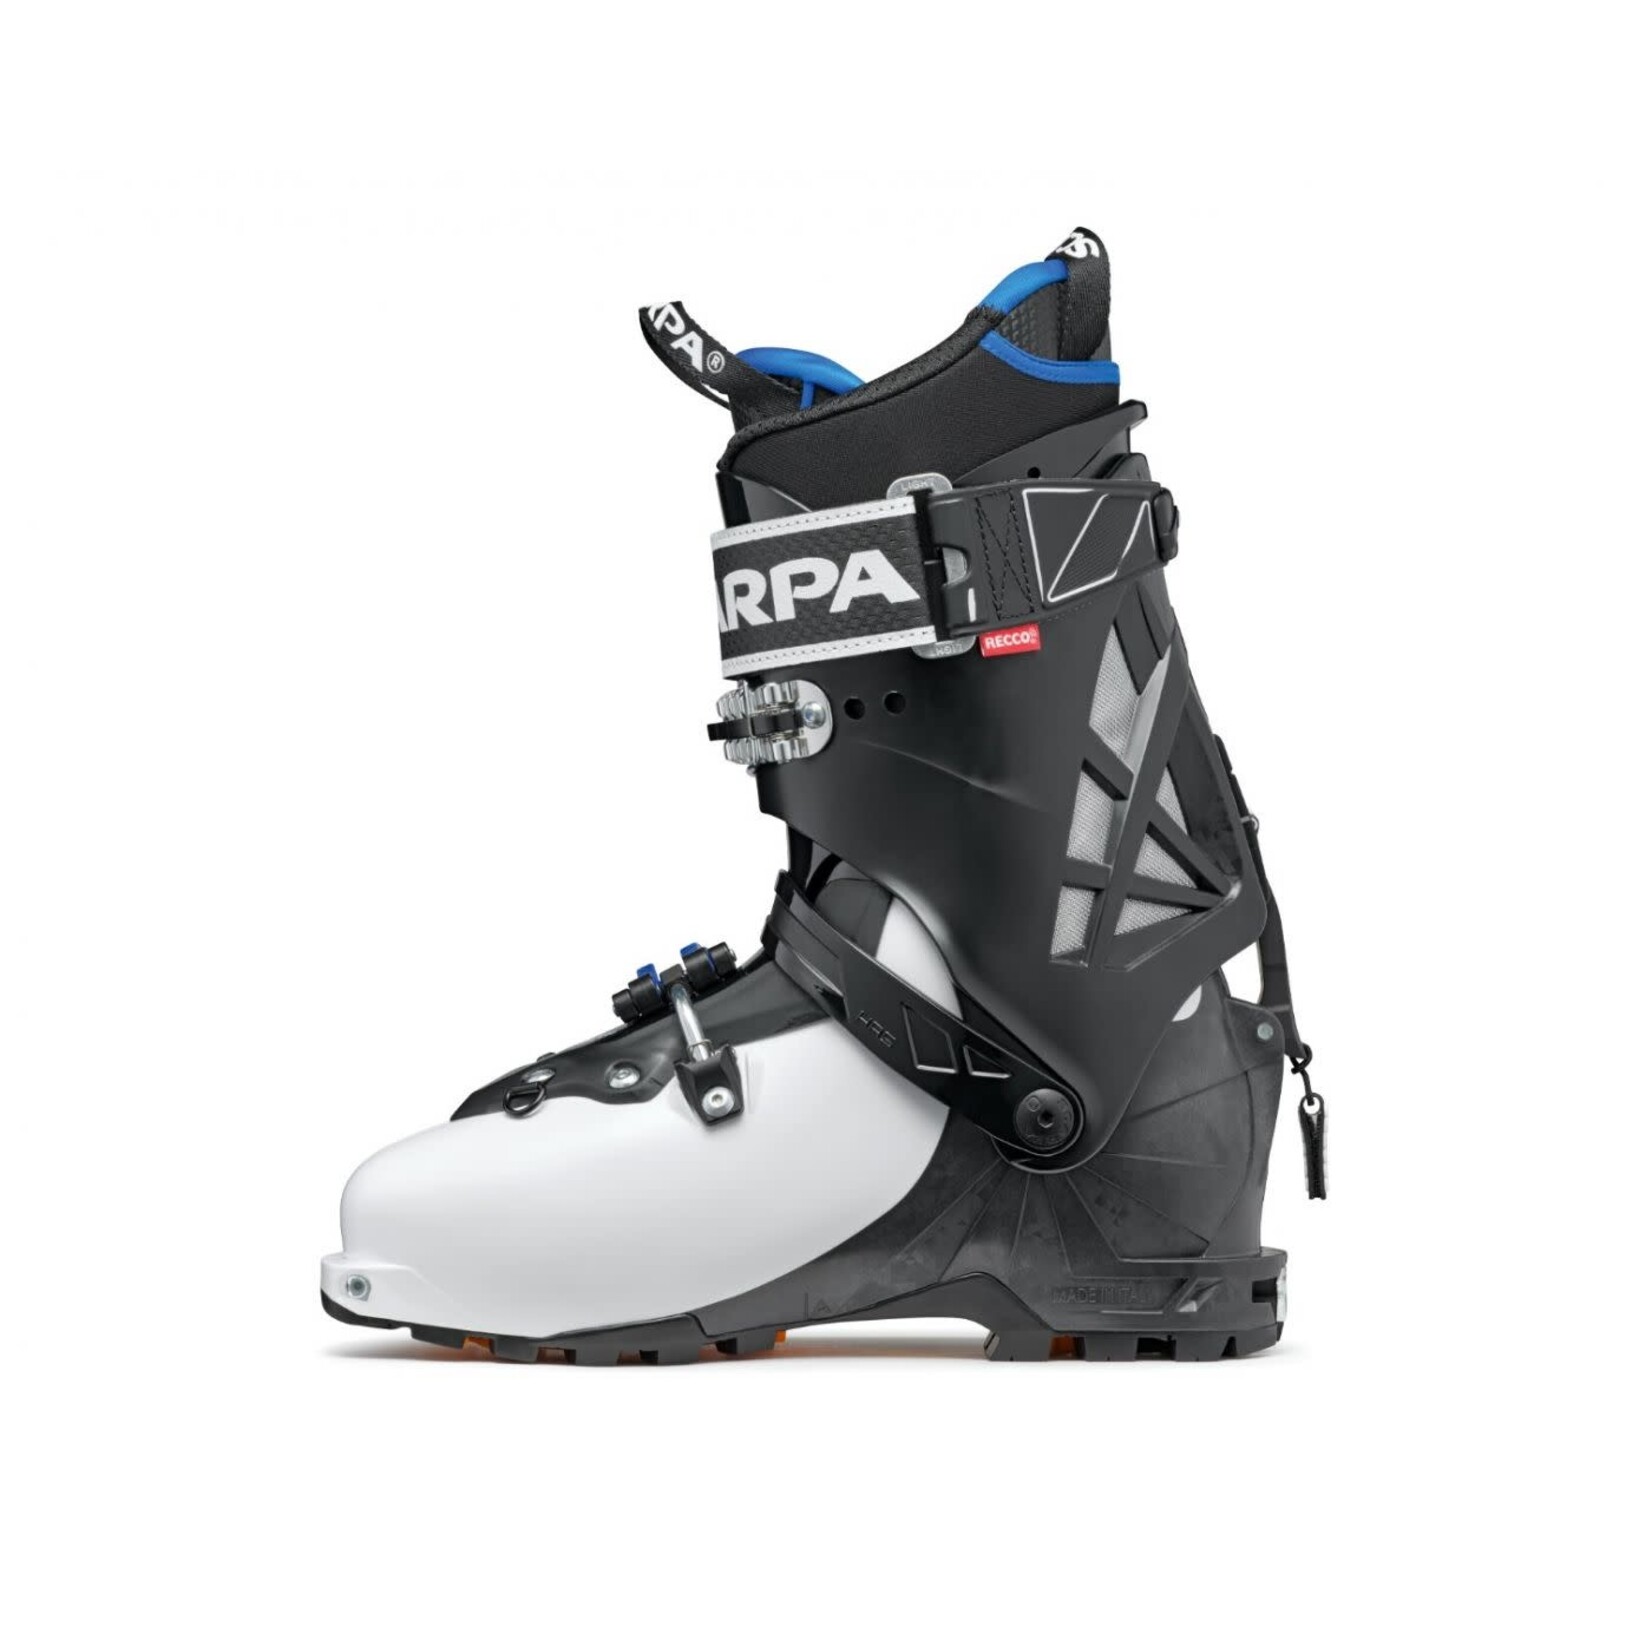 Scarpa Bottes de ski haute-route Maestrale RS